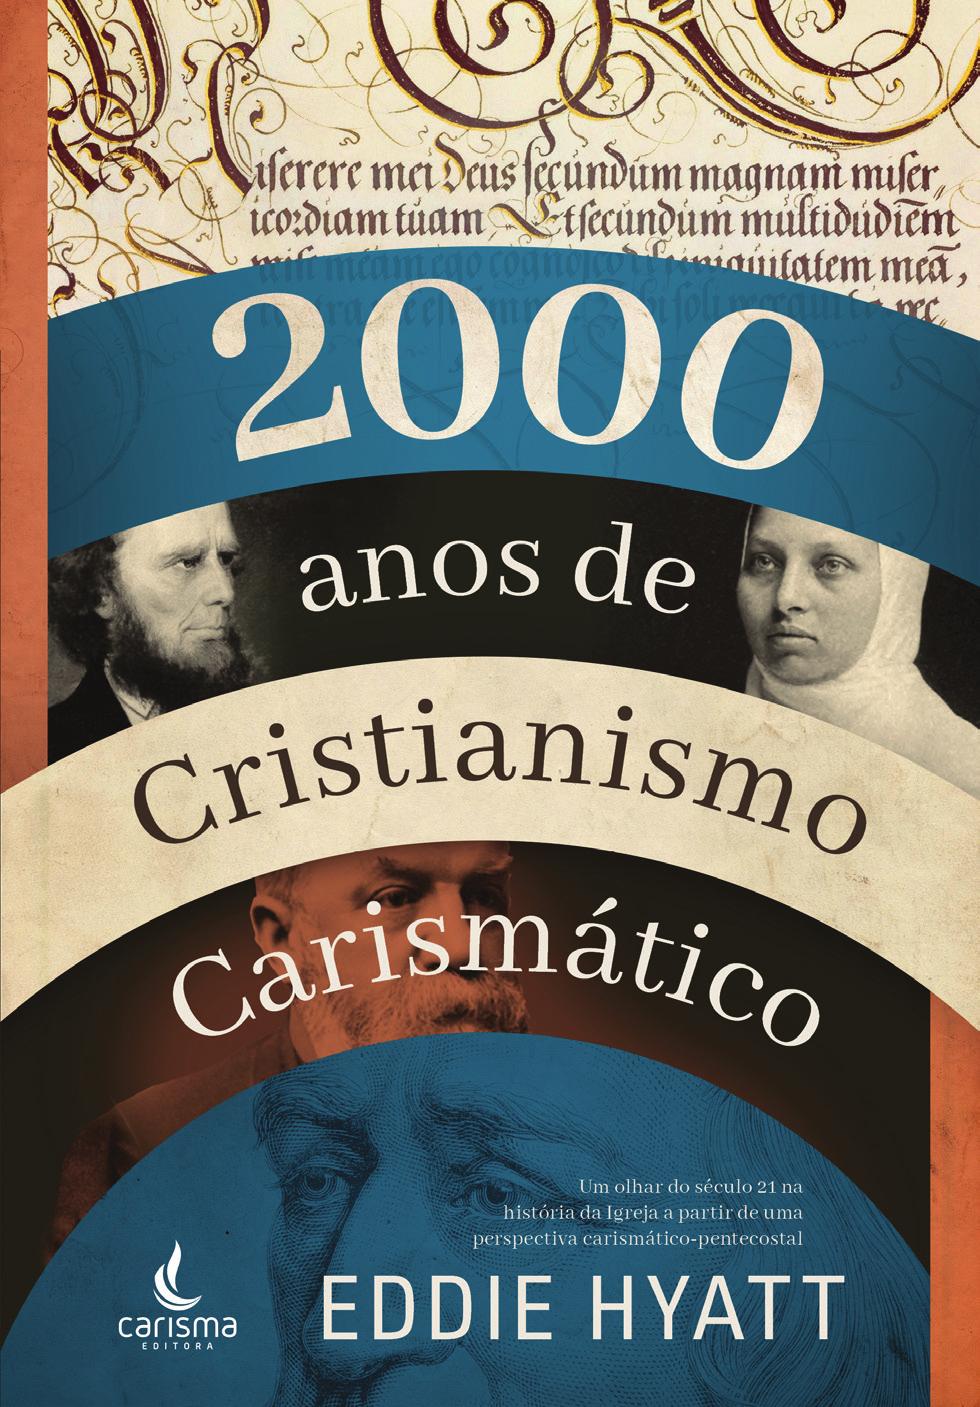 2000 anos de Cristianismo Carismático EDDIE HYATT 2000 Anos de Cristianismo Carismático é um rico volume sobre a surpreendente história dos movimentos do Espírito no decorrer de 21 séculos de